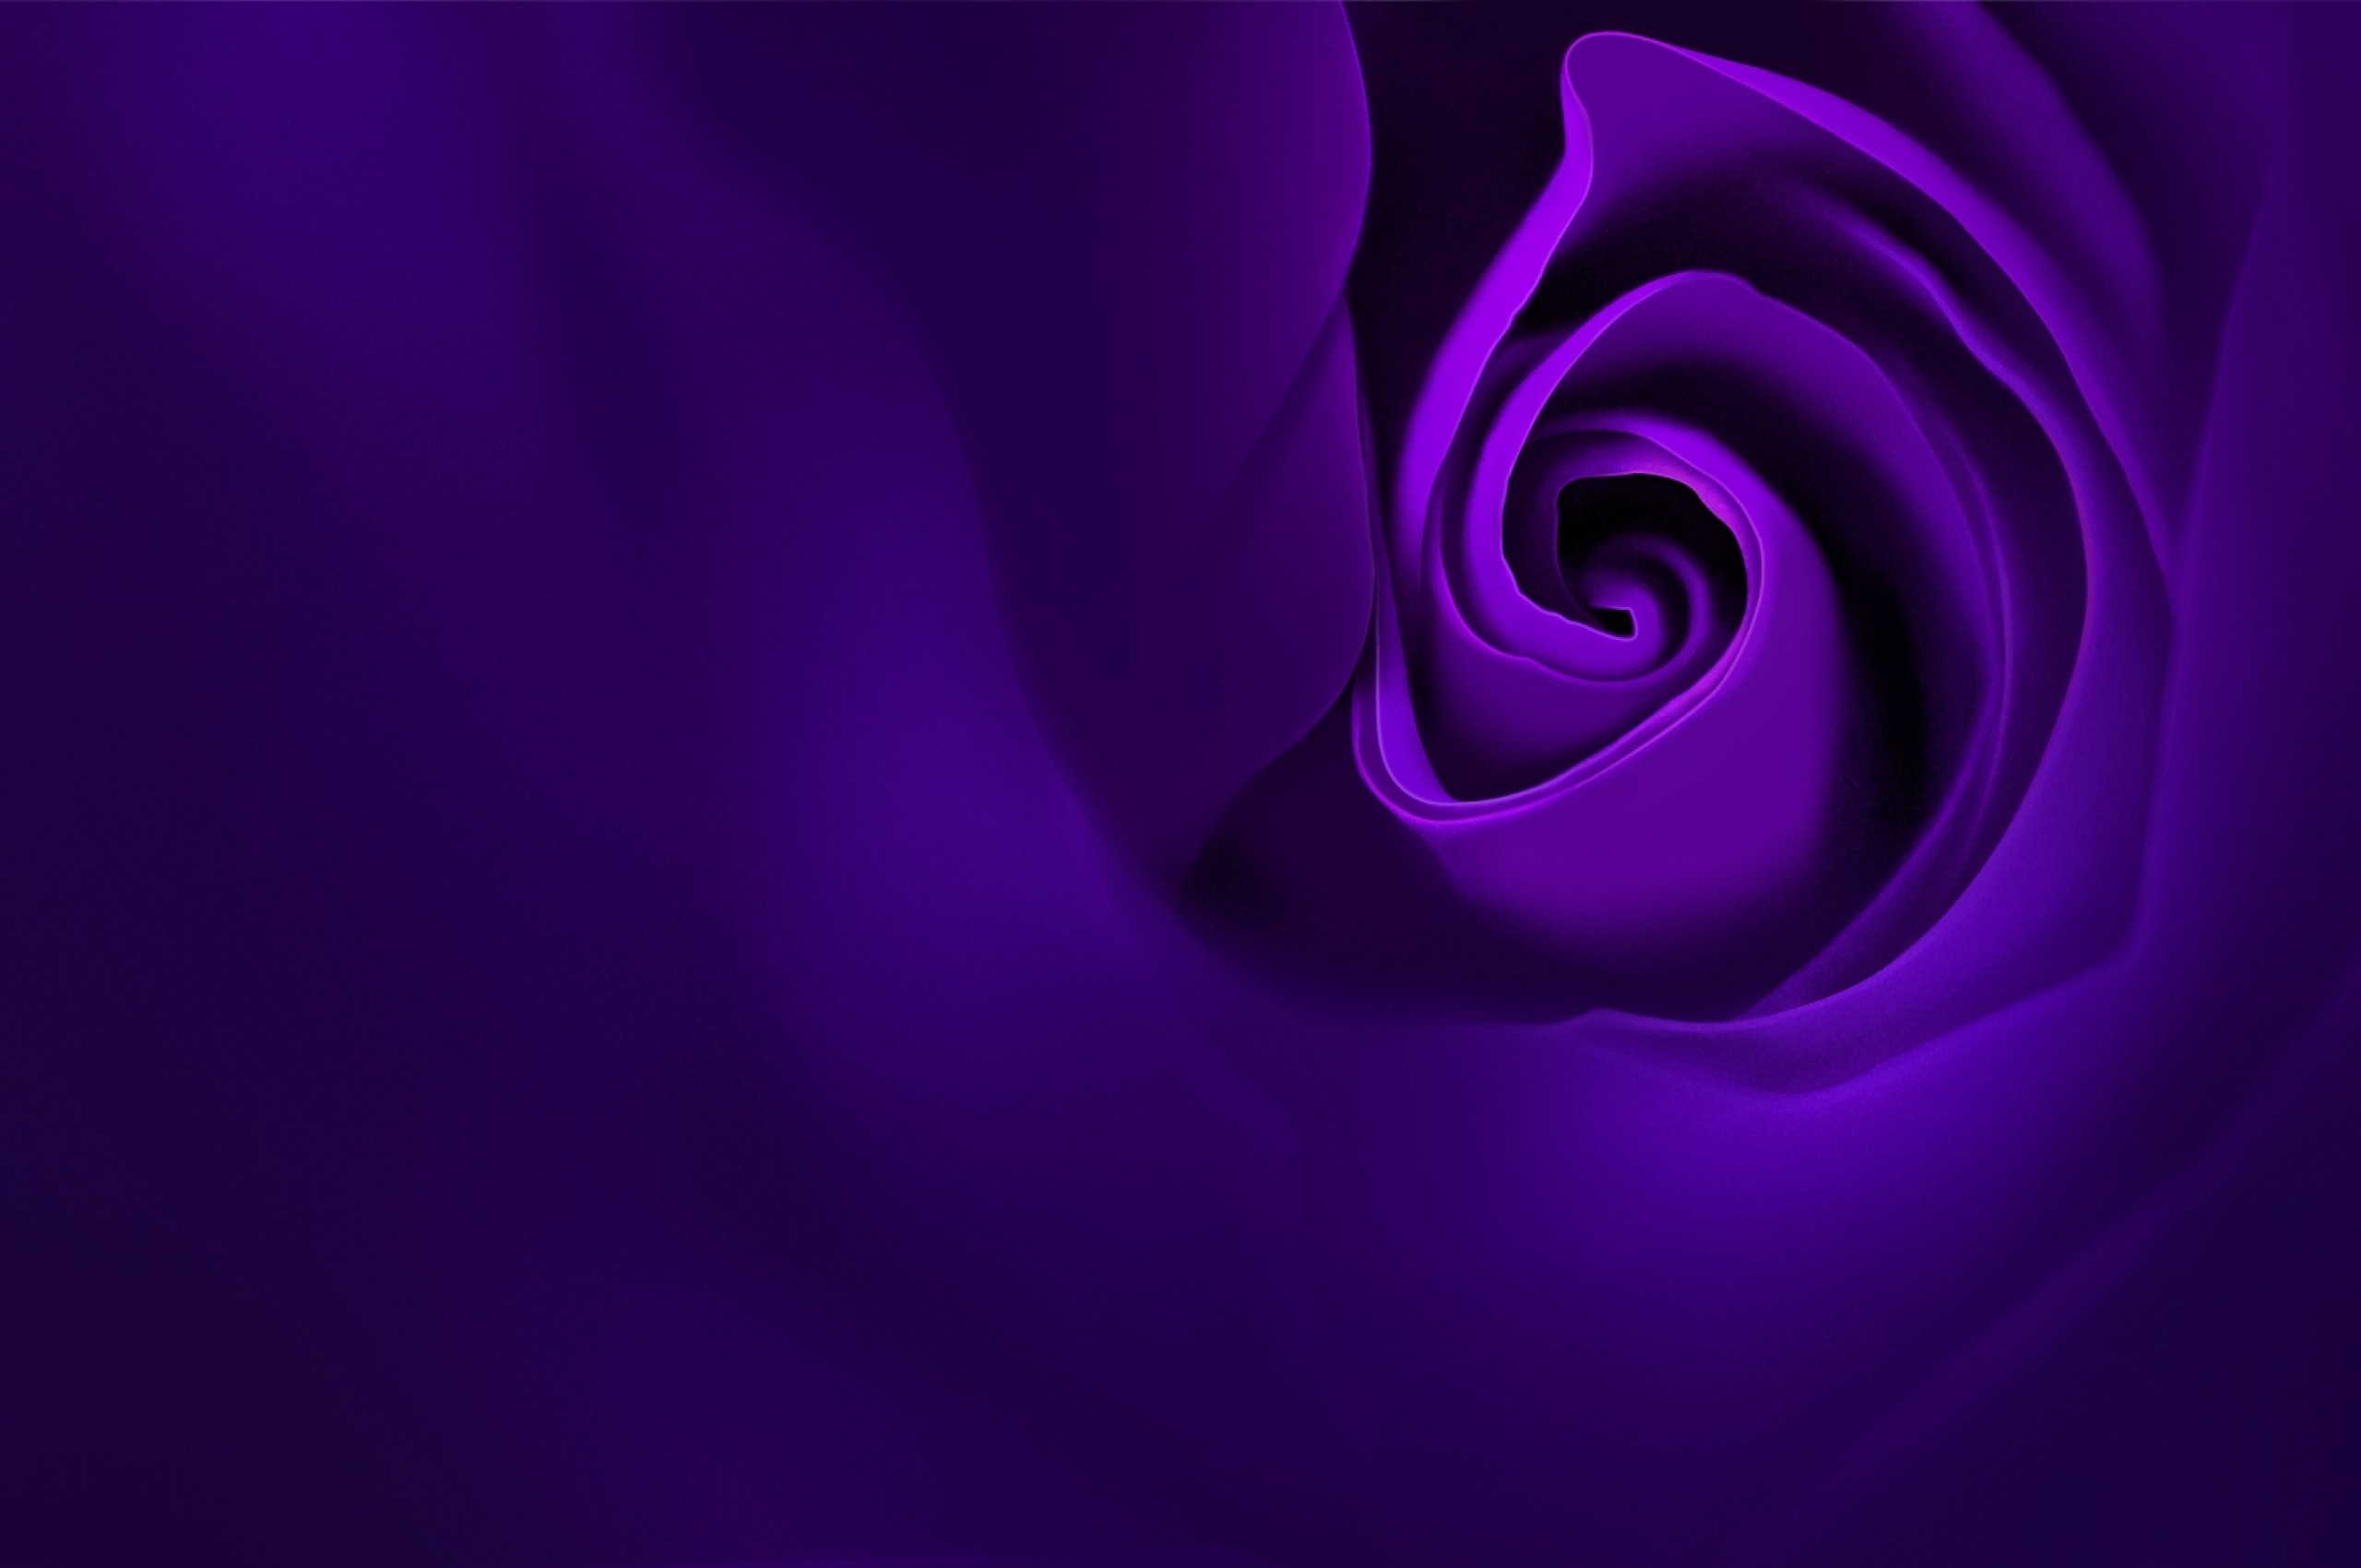 Violet Rose, Petals - Floribunda , HD Wallpaper & Backgrounds